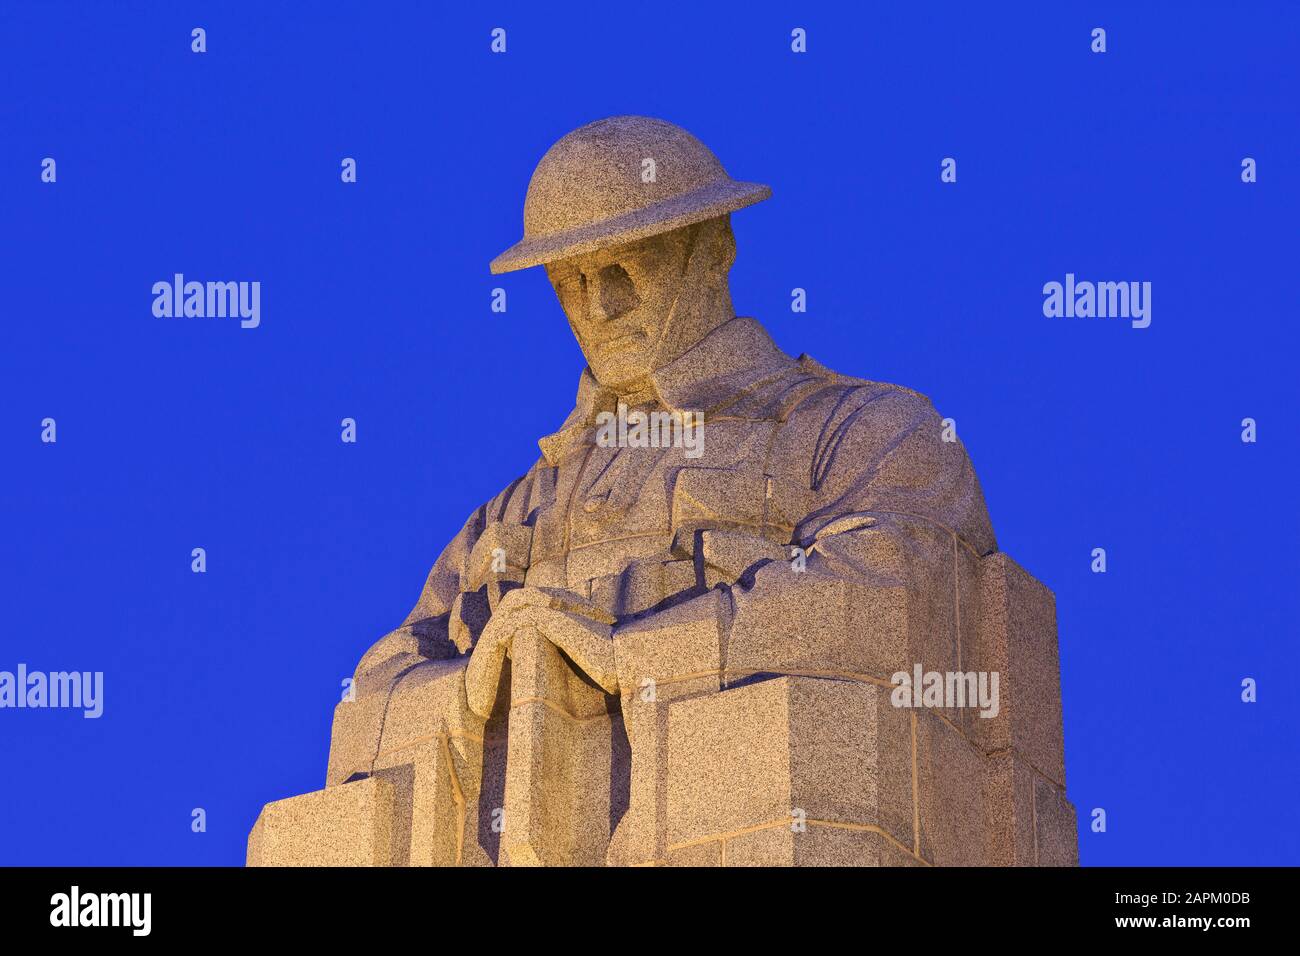 La statue du soldat couvant Saint Julien Memorial marquant la 1ère attaque de gaz allemand du 22 au 24 avril 1915 à Langemark-Poelkapelle, Belgique Banque D'Images